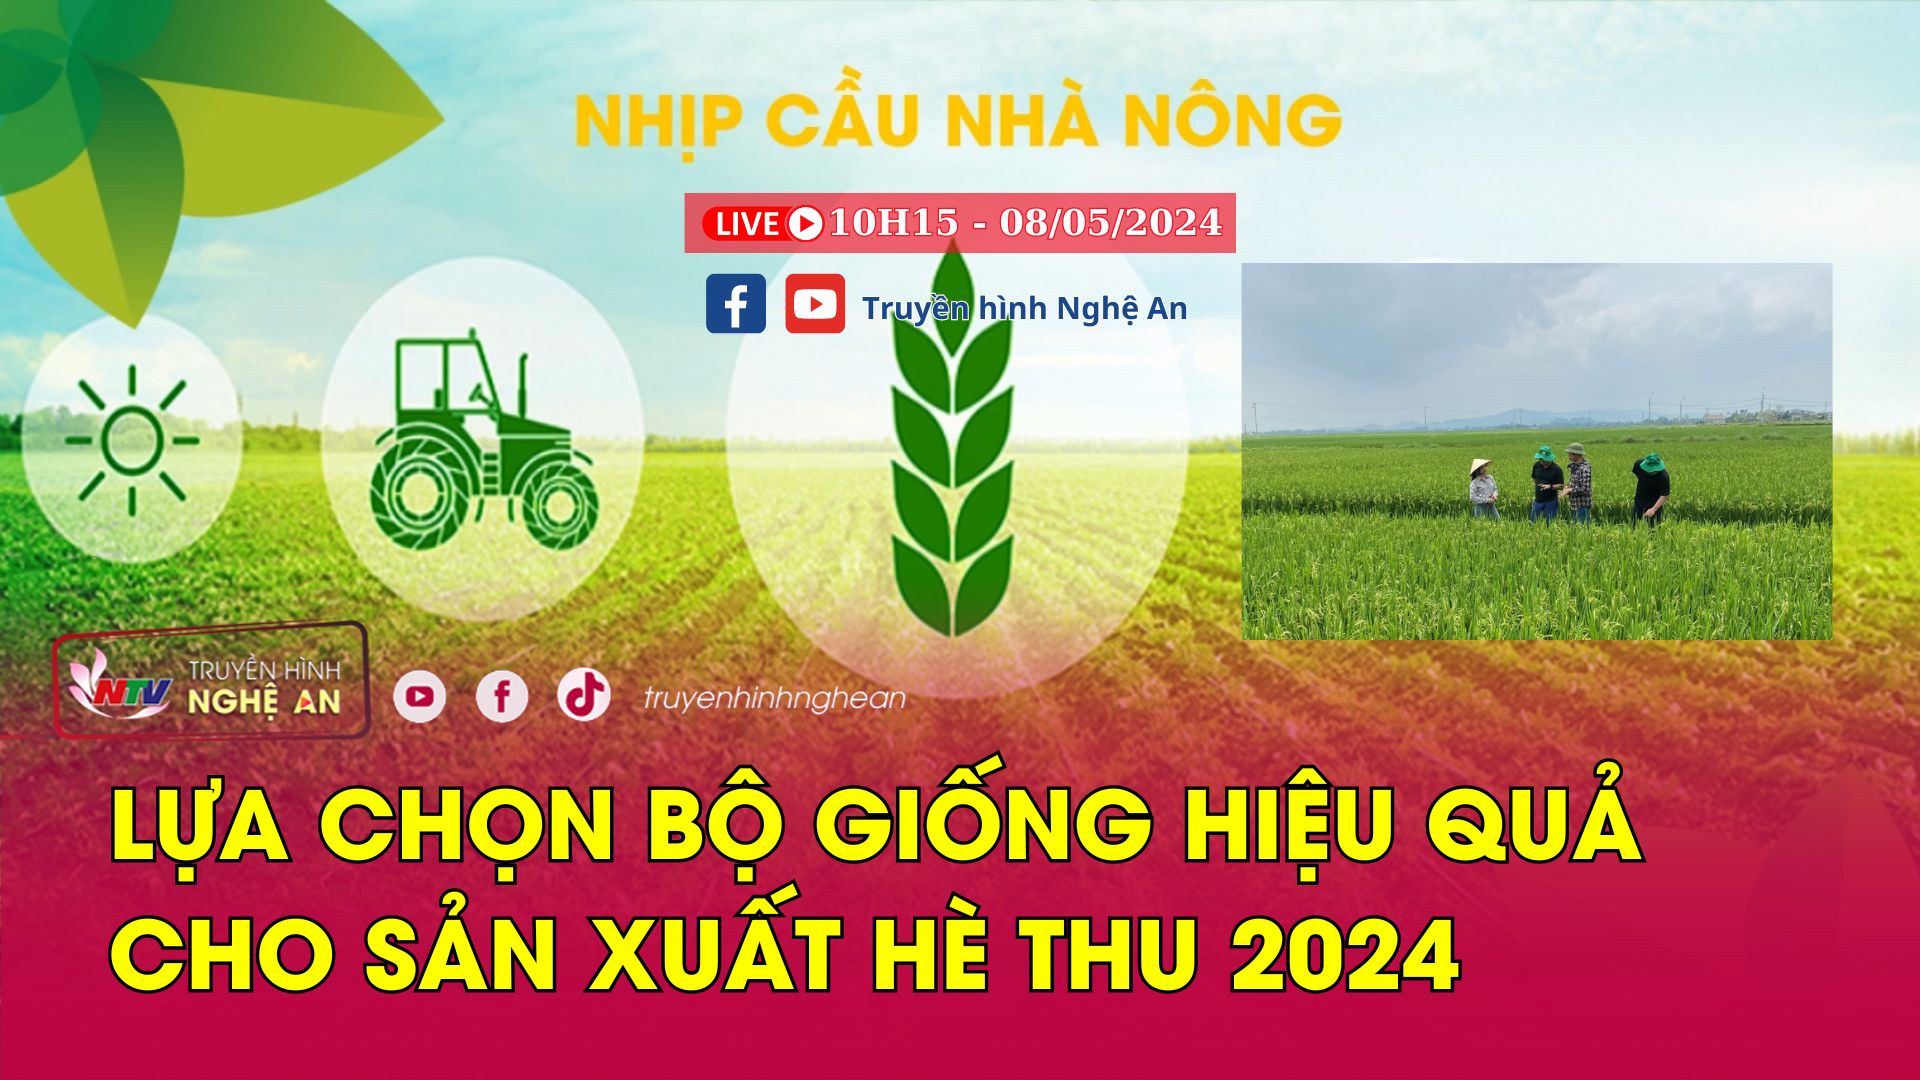 Nhịp cầu nhà nông: Lựa chọn bộ giống hiệu quả cho sản xuất hè thu 2024